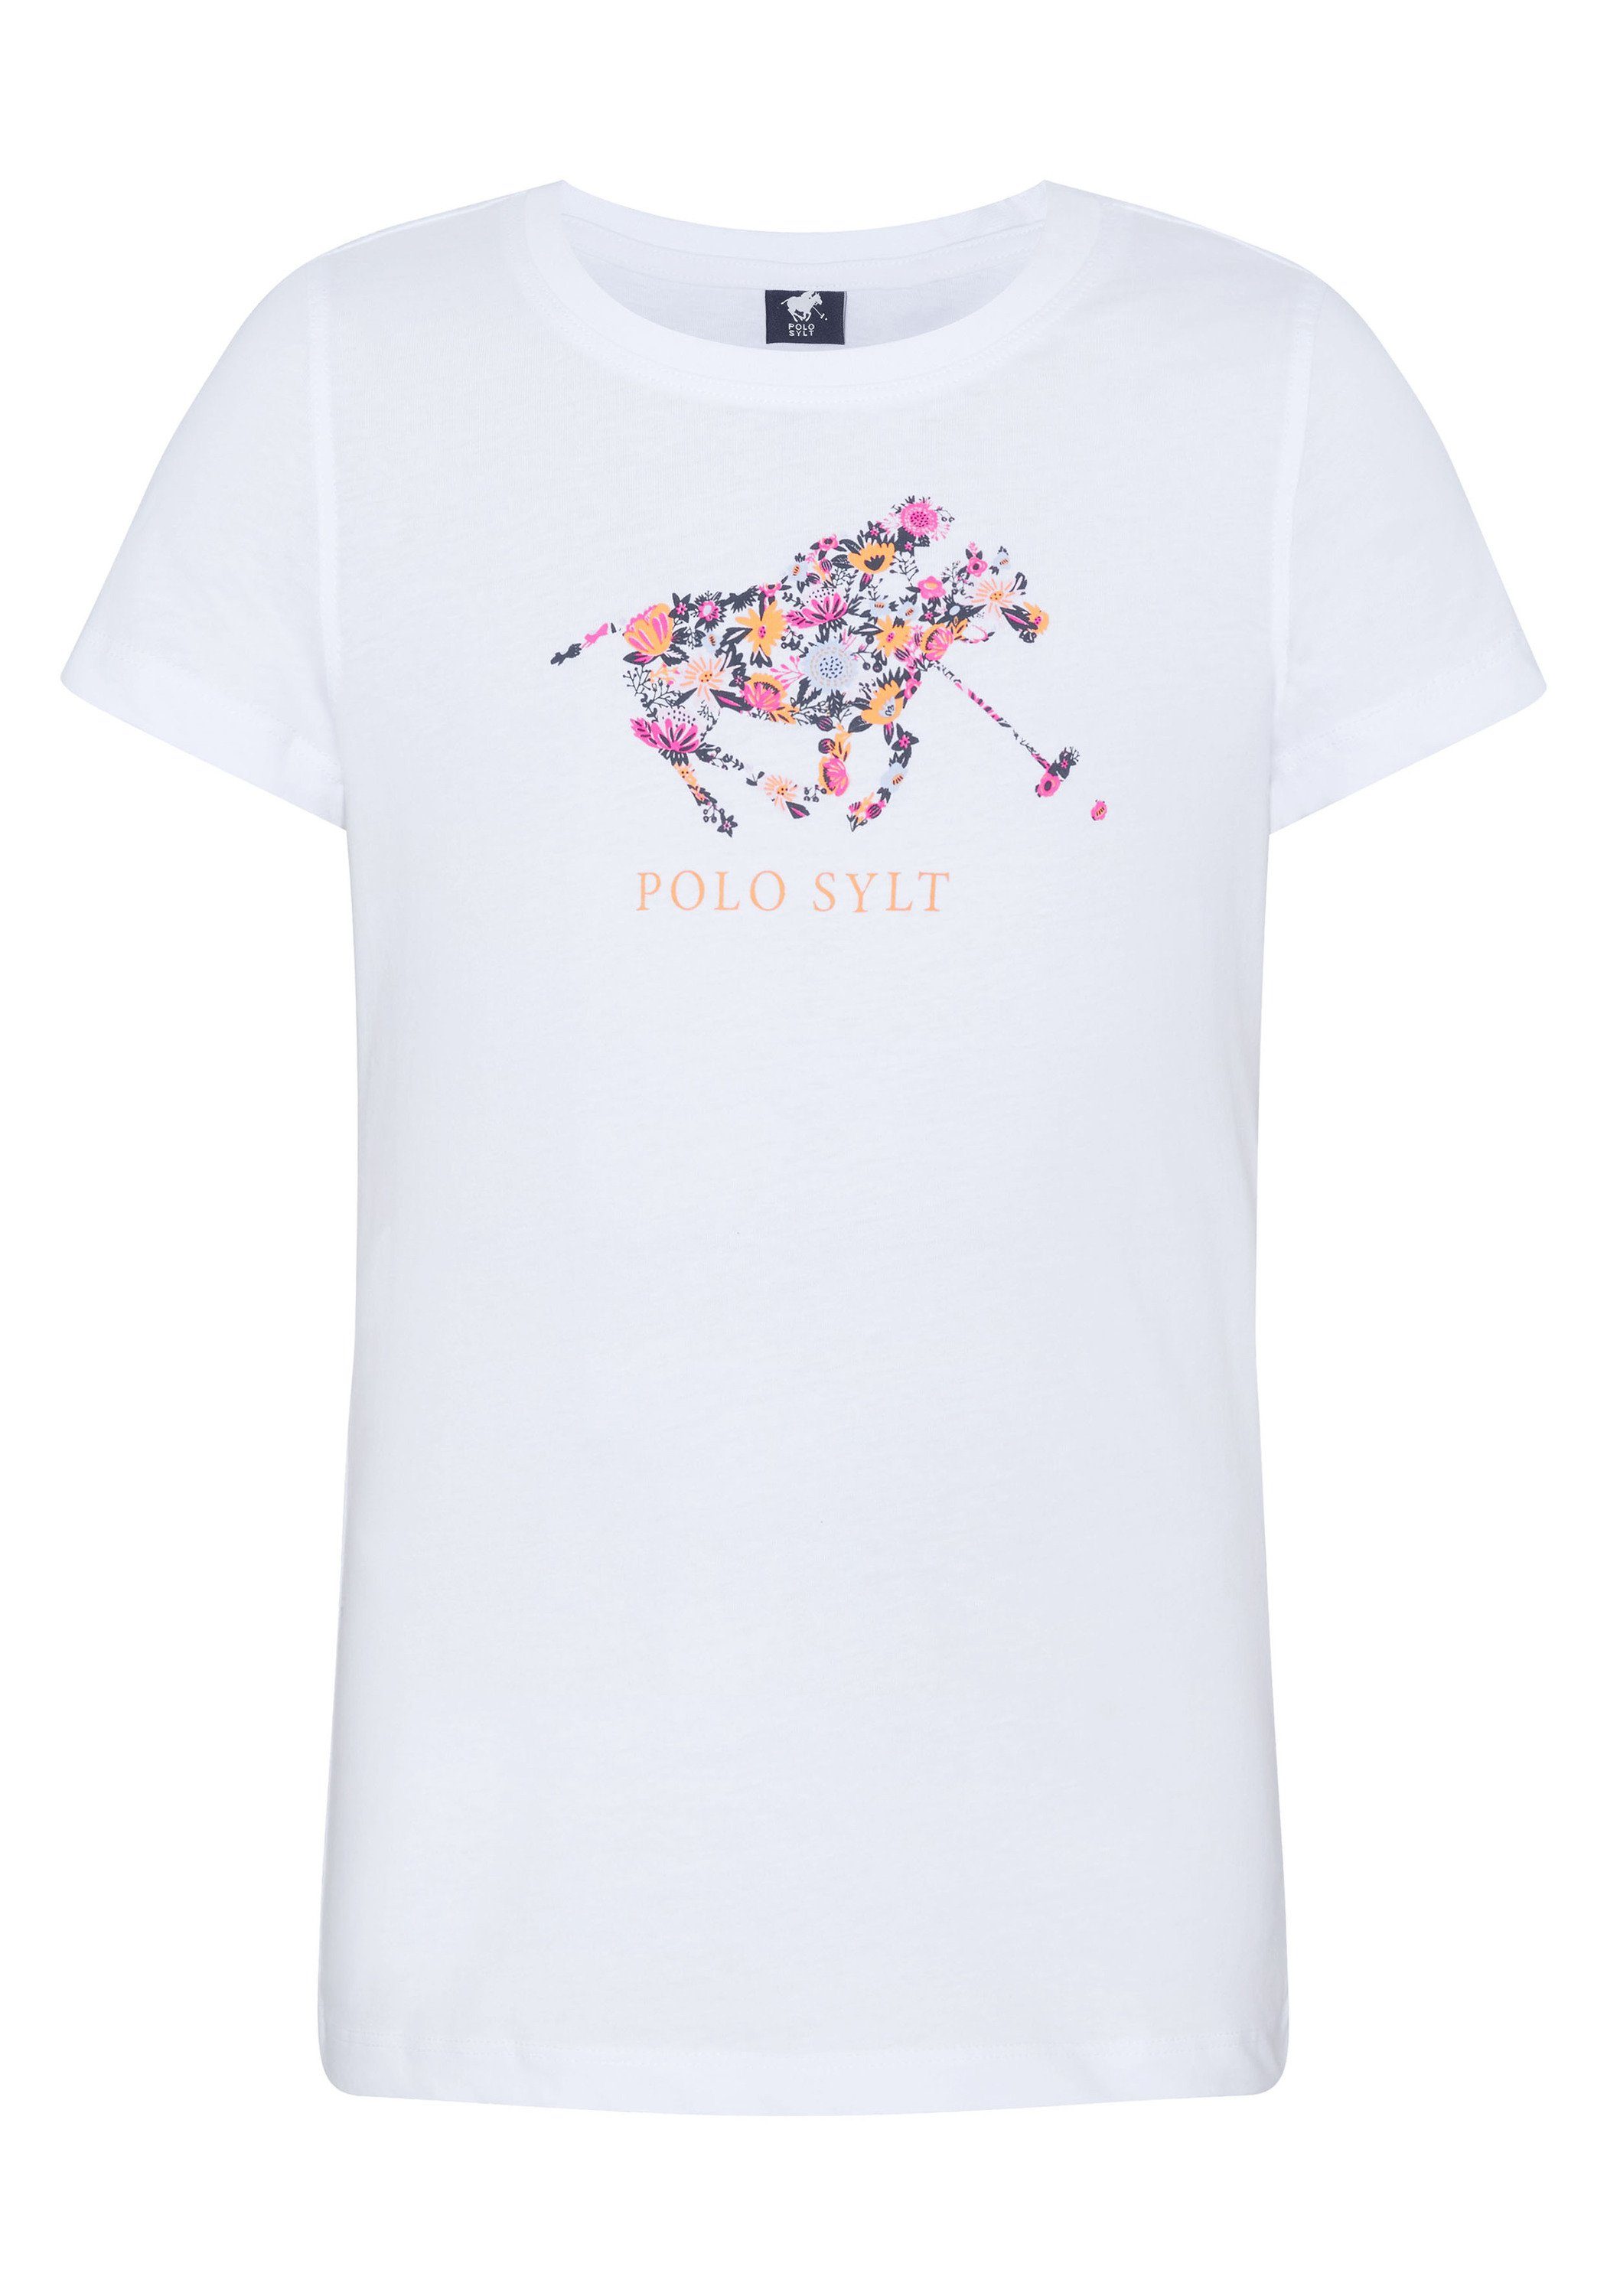 Polo Sylt Print-Shirt aus weichem Jersey 11-0601 Bright White